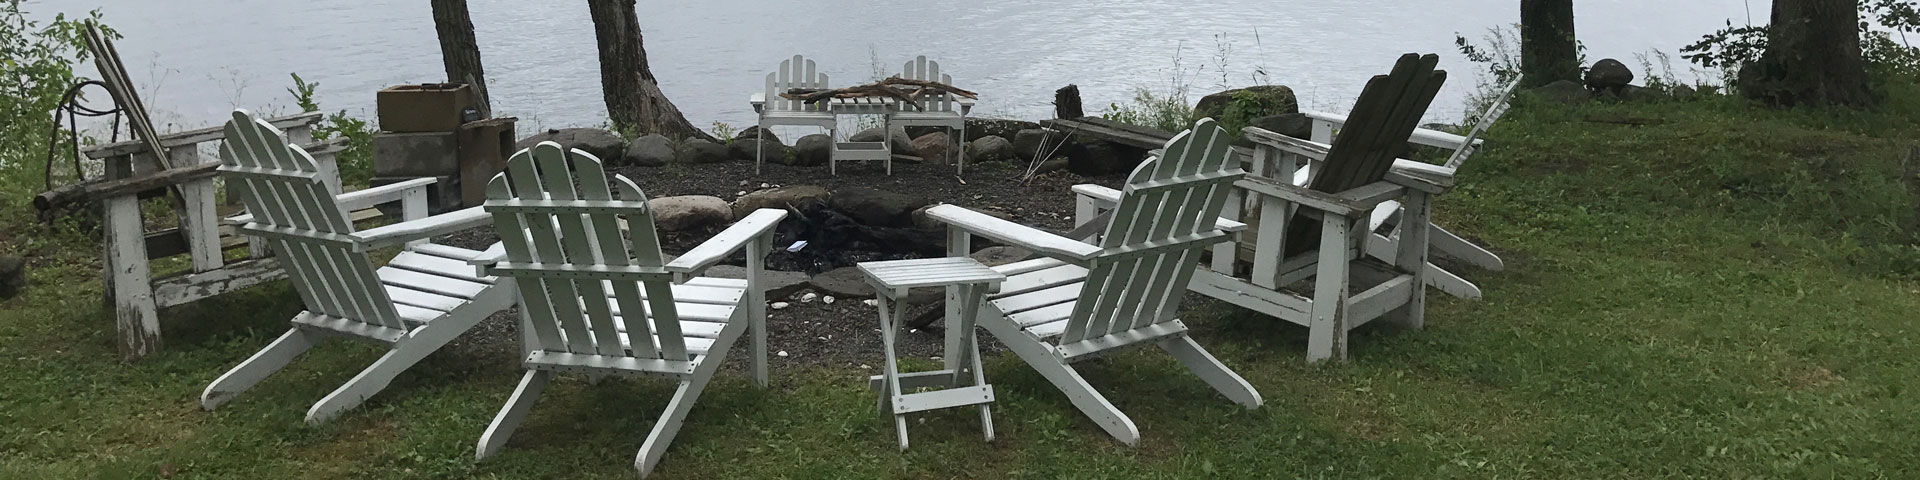 Adirondack chairs gathered around a firepit near a lake.